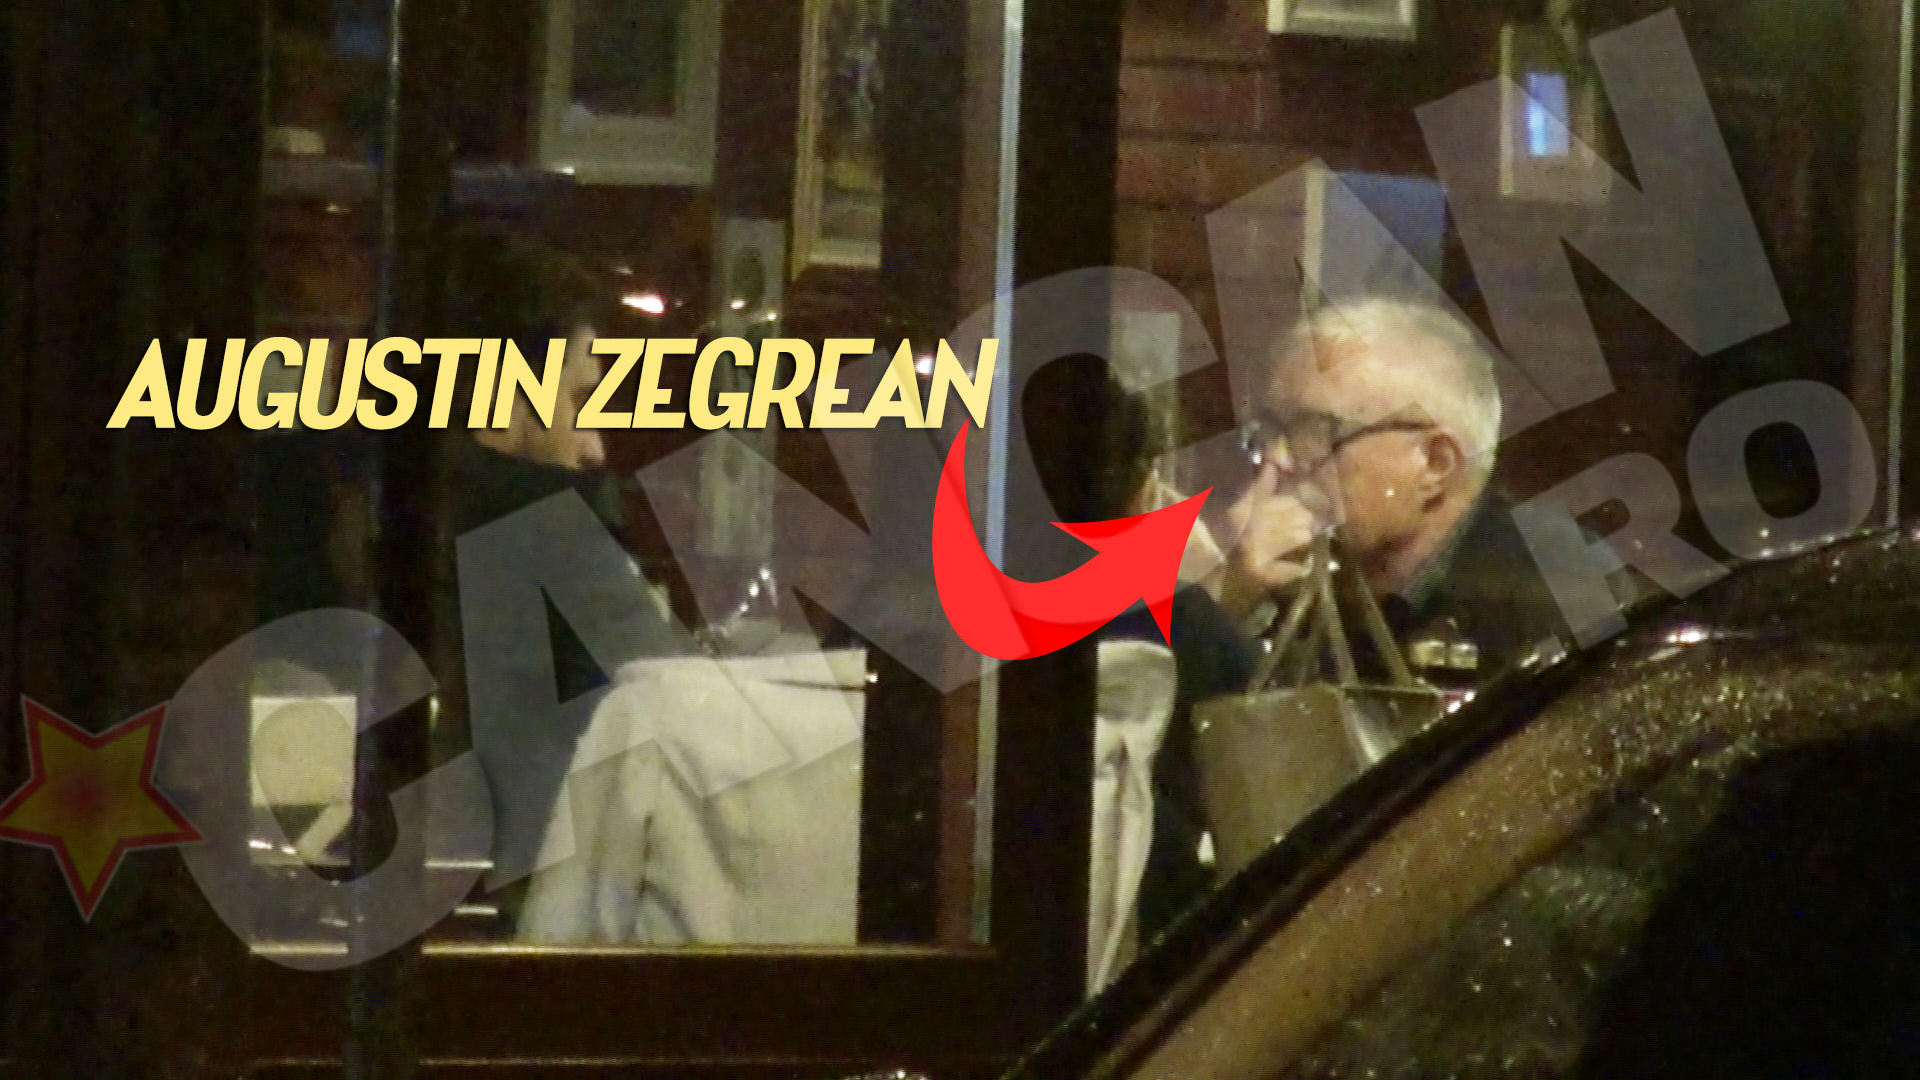 La ceas de seara, presedintele CCR a luat masa alaturi de doi tineri intr-un restaurant italienesc